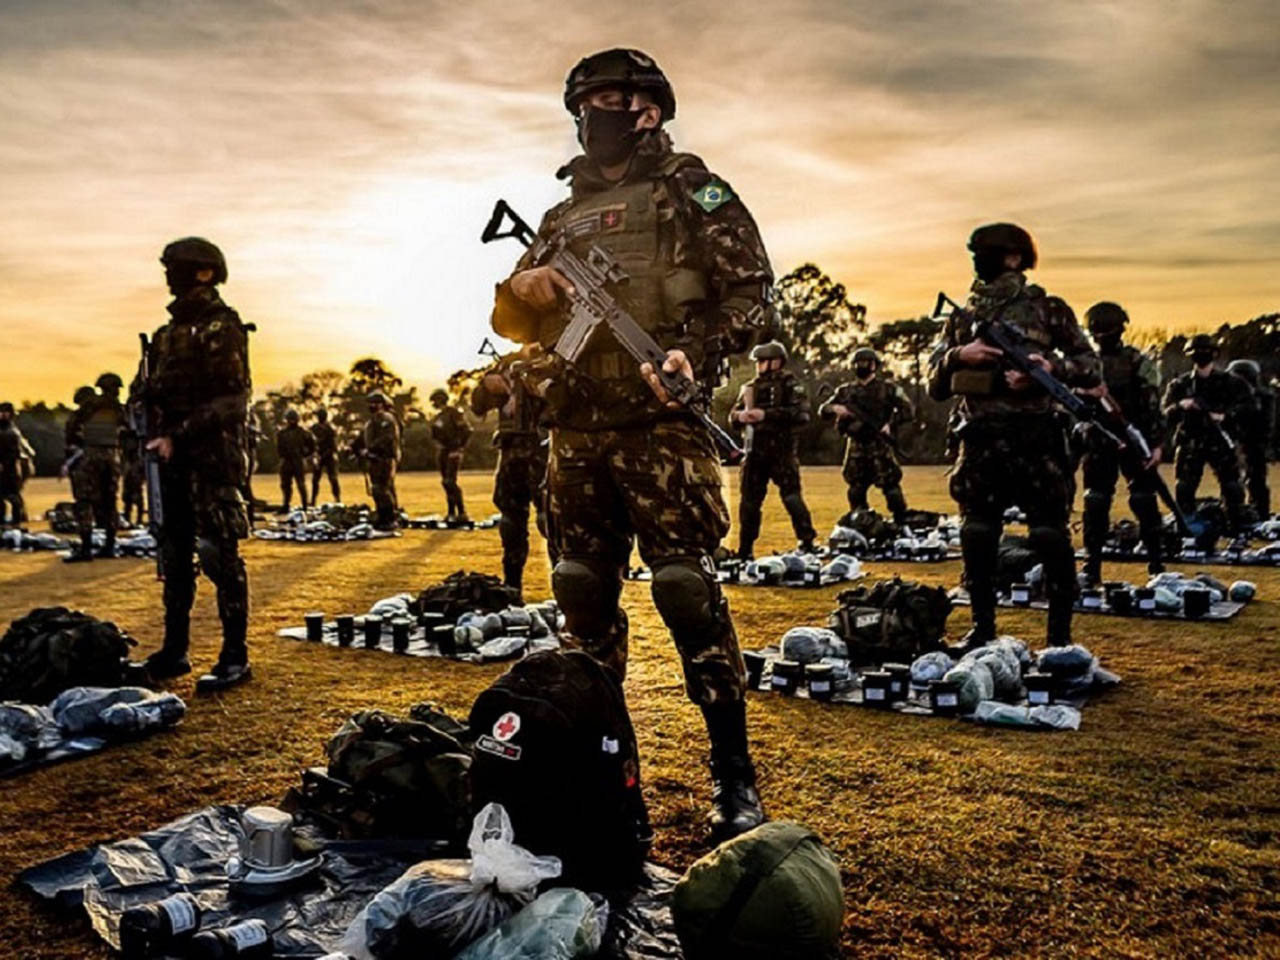 ONU inspeciona tropas da Marinha e do Exército Brasileiro